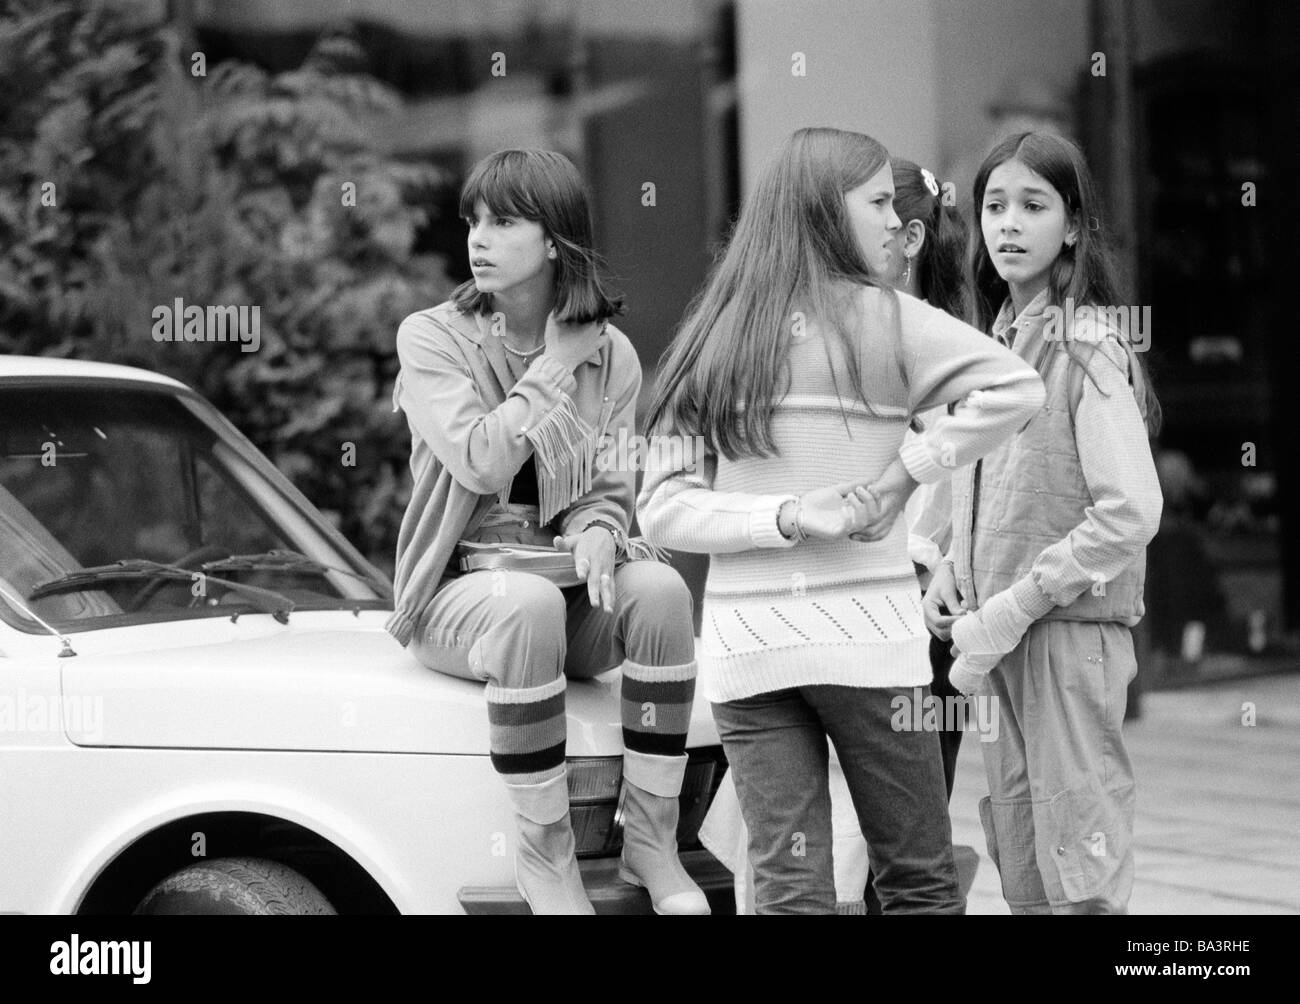 80, fotografía en blanco y negro, gente, cuatro jóvenes chica se encuentran cerca de un coche, los brasileños, chaqueta, pulli, pantalones, vida cotidiana, Brasil, Minas Gerais, Belo Horizonte, de 16 a 18 años Foto de stock